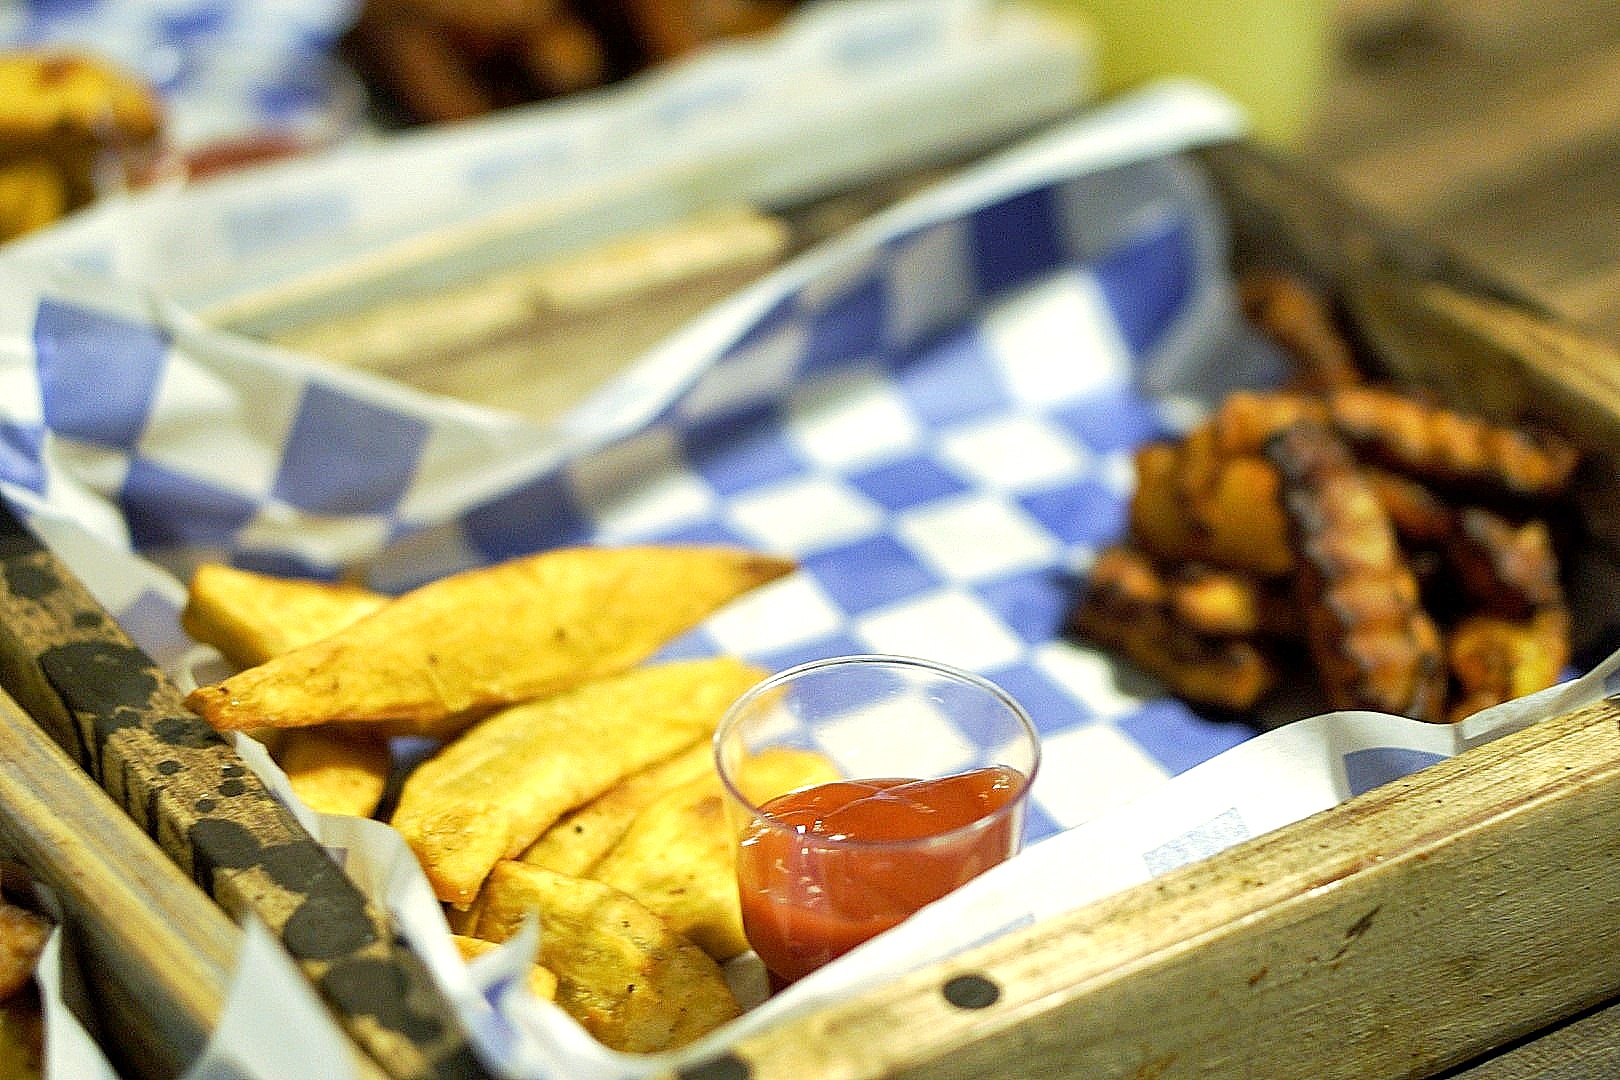 fries and plantain at food shack Lagos